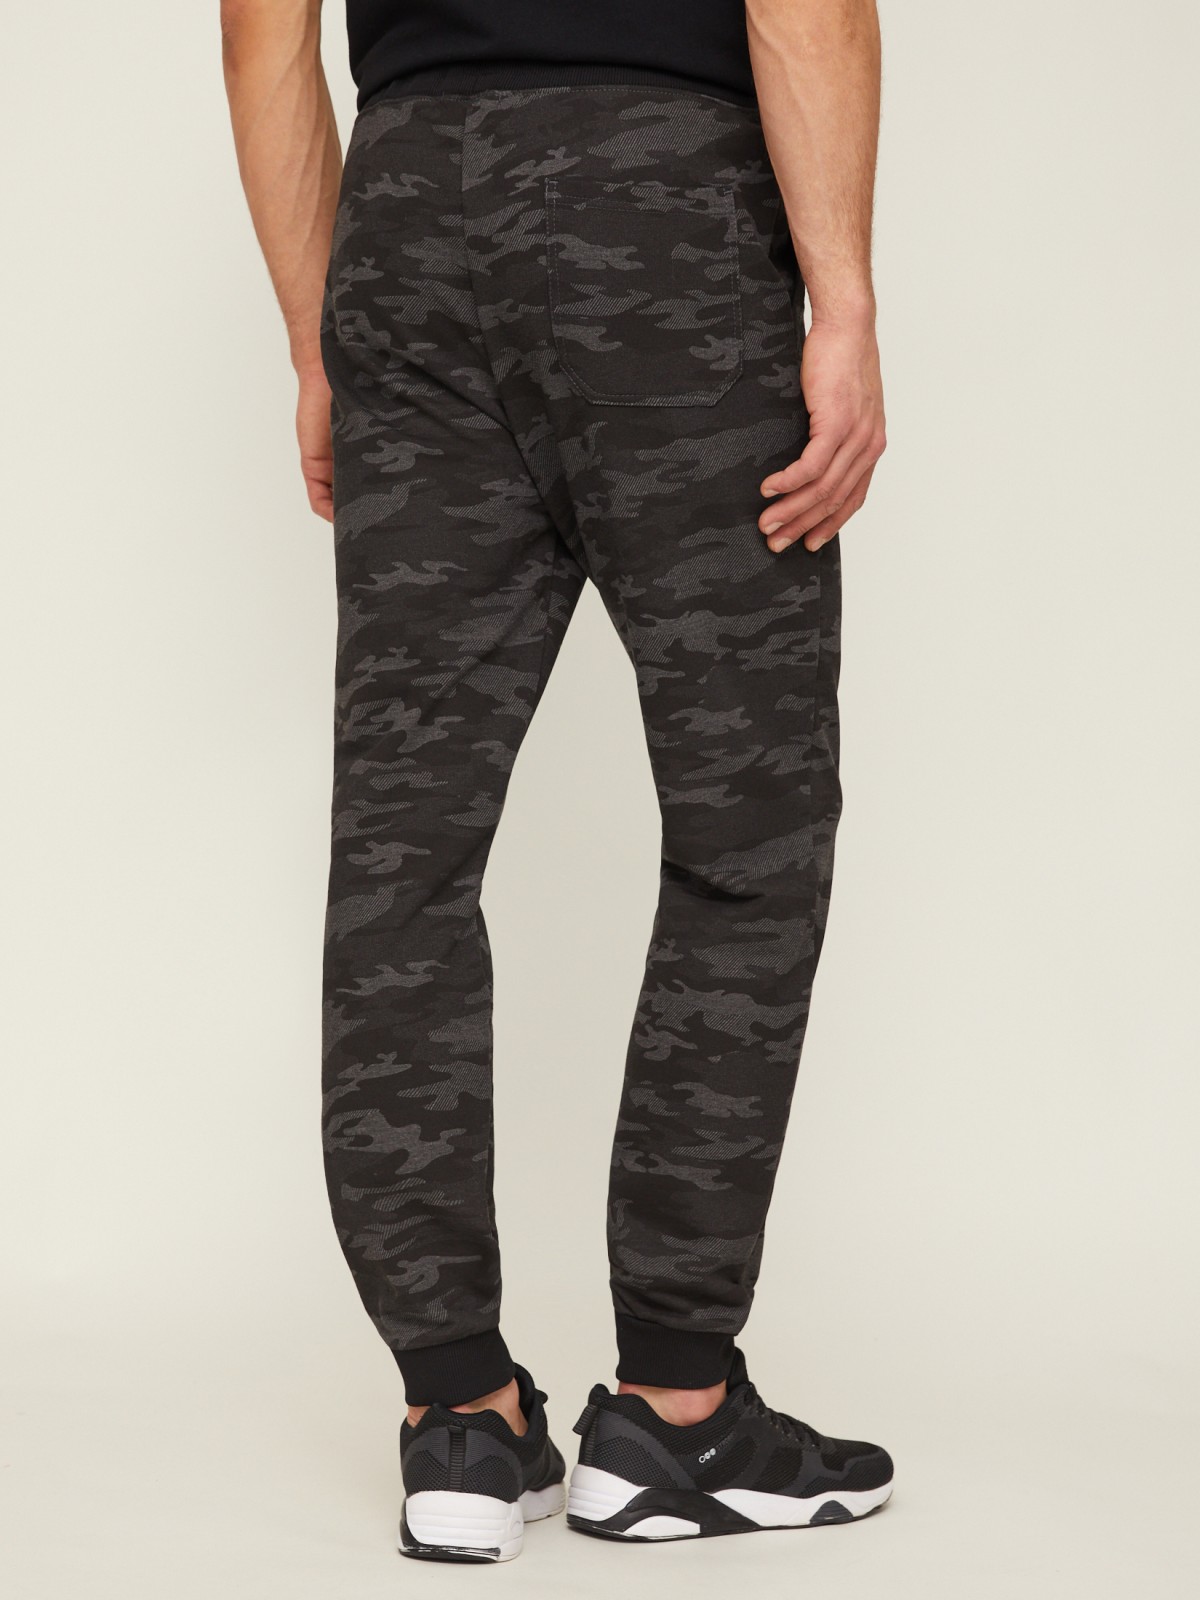 Трикотажные брюки-джоггеры с камуфляжным принтом zolla 21313761U033, цвет темно-серый, размер M - фото 5